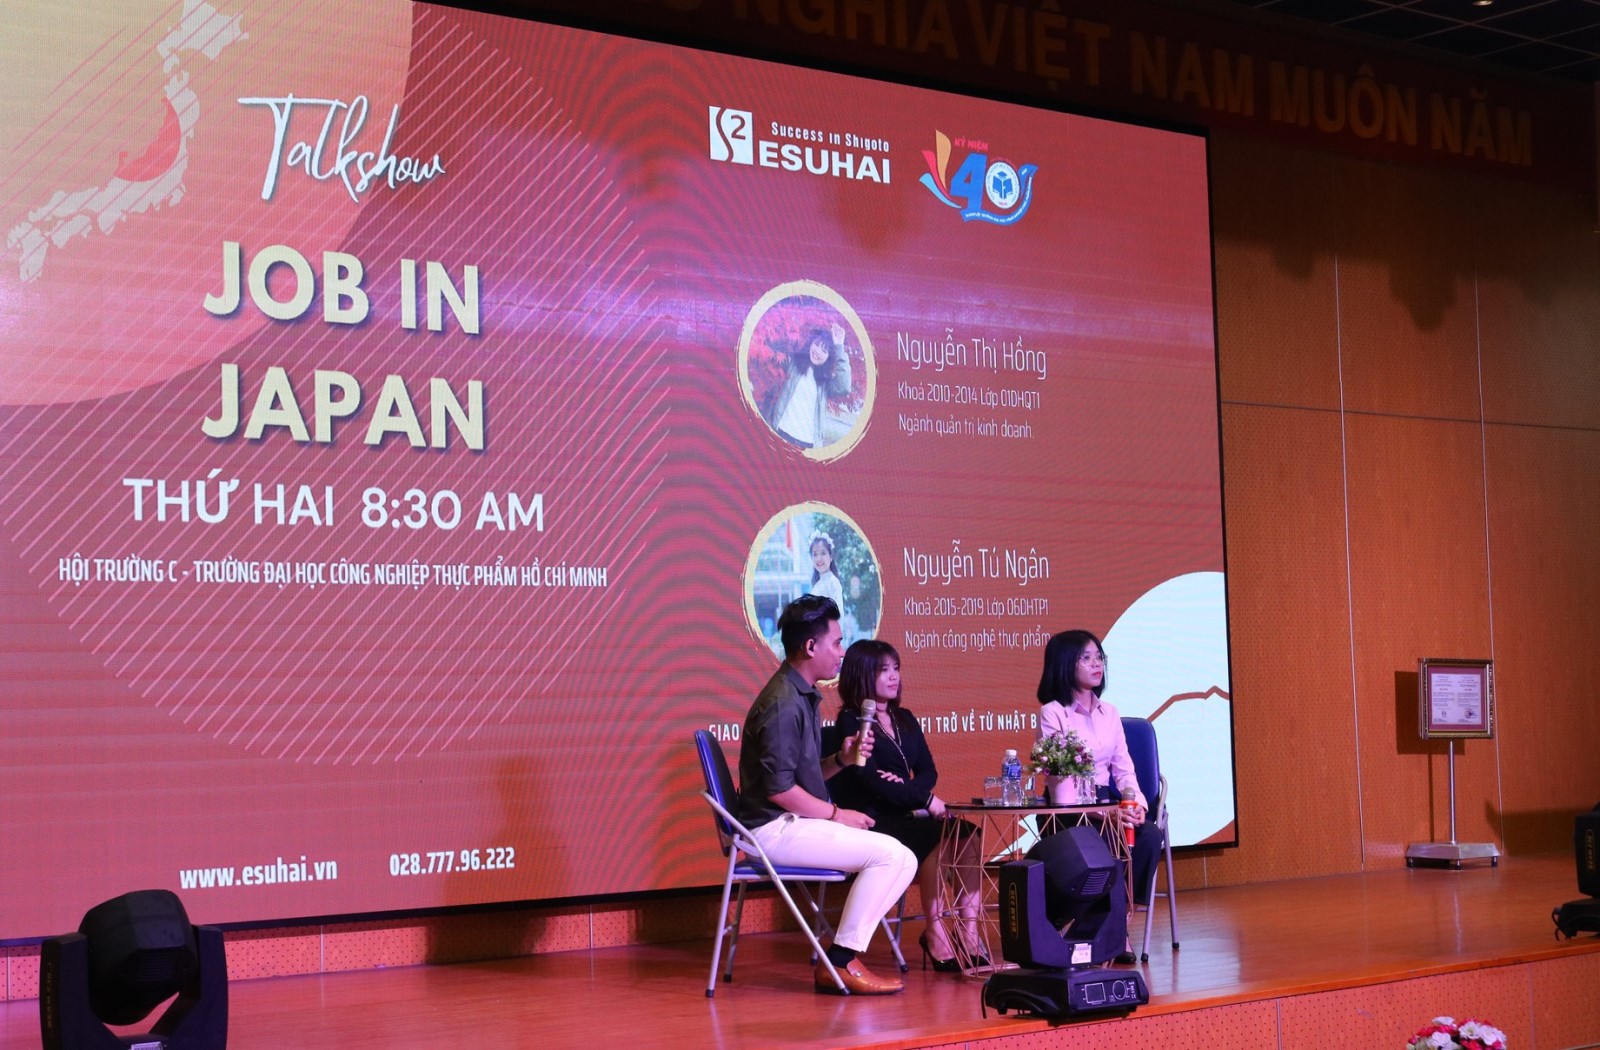 HUFI Talent Day: Talkshow với chủ đề “Talk in Japan”